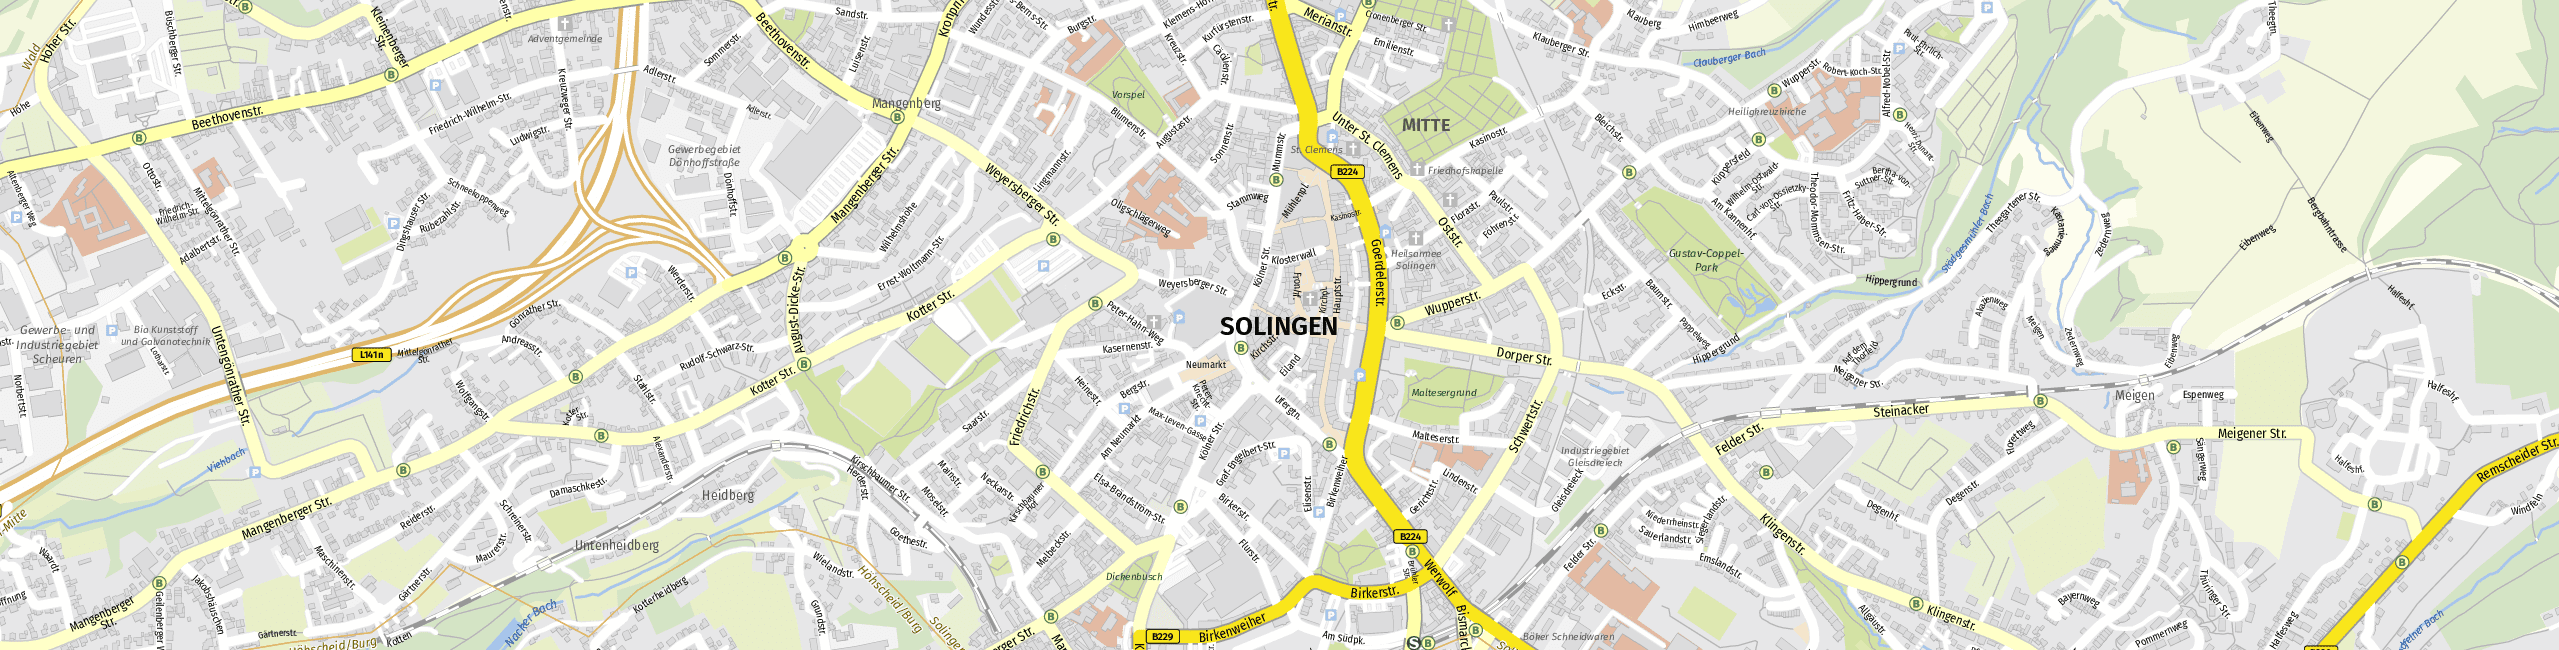 Stadtplan Solingen zum Downloaden.